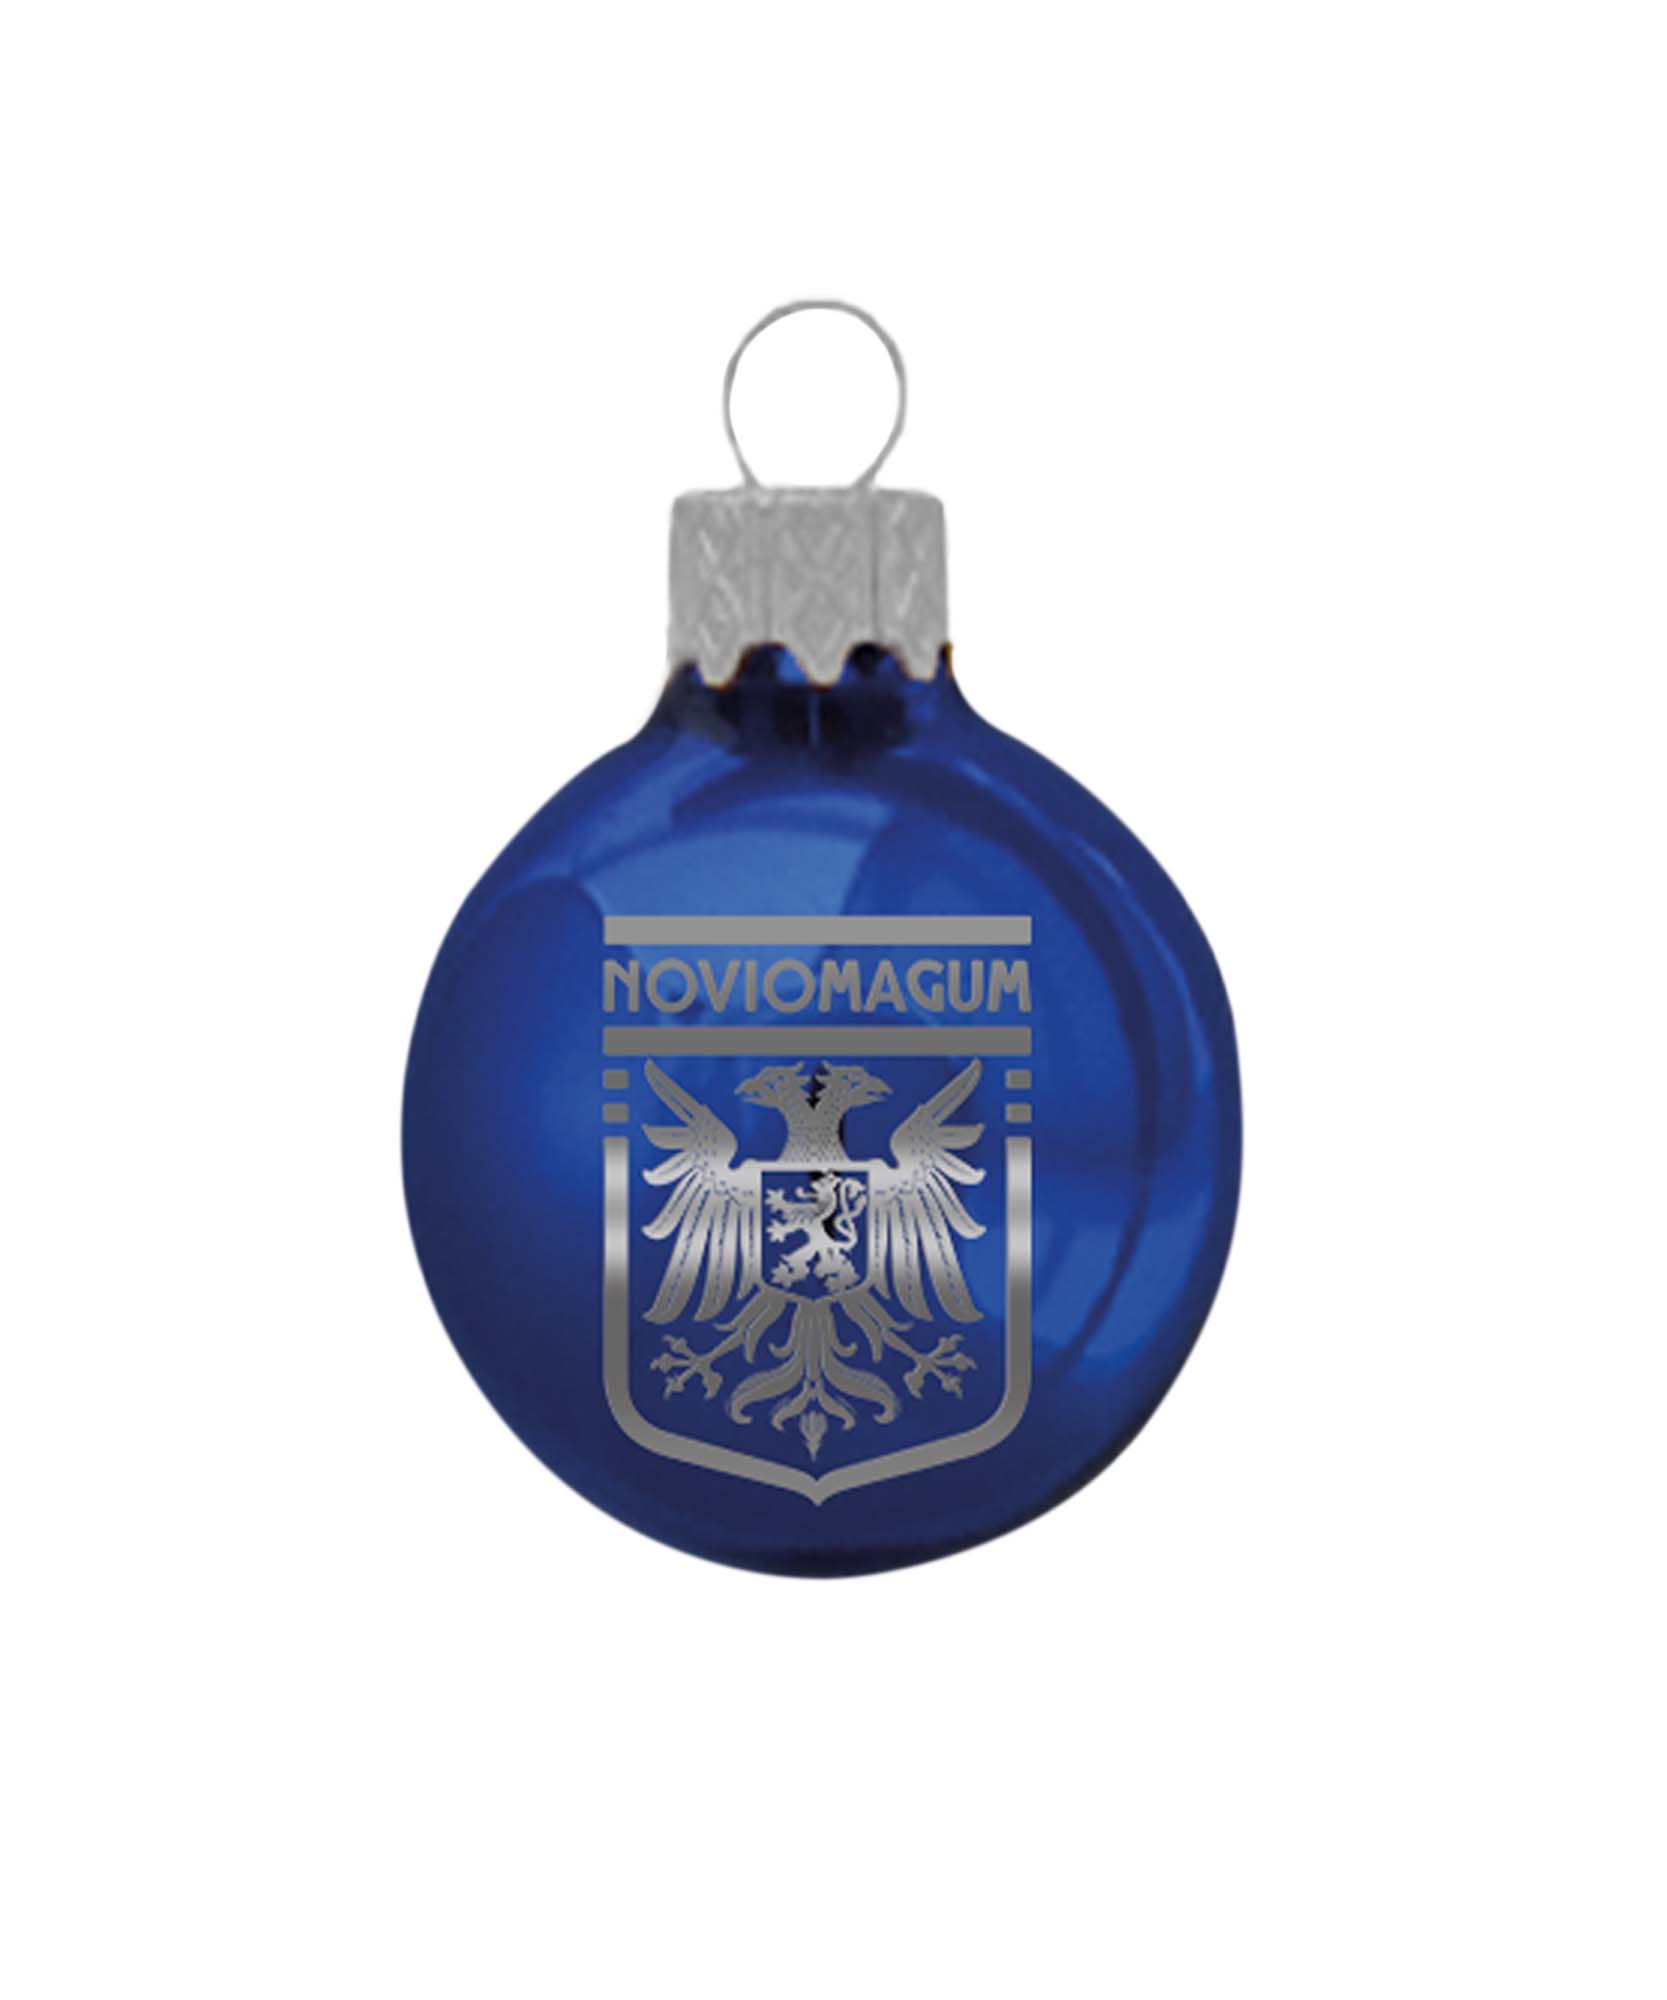 Prachtige blauwe kerstbal met het 'Noviomagum' wapen van Nijmegen erop voor kerstmis. Een leuke must-have voor in elke kerstboom